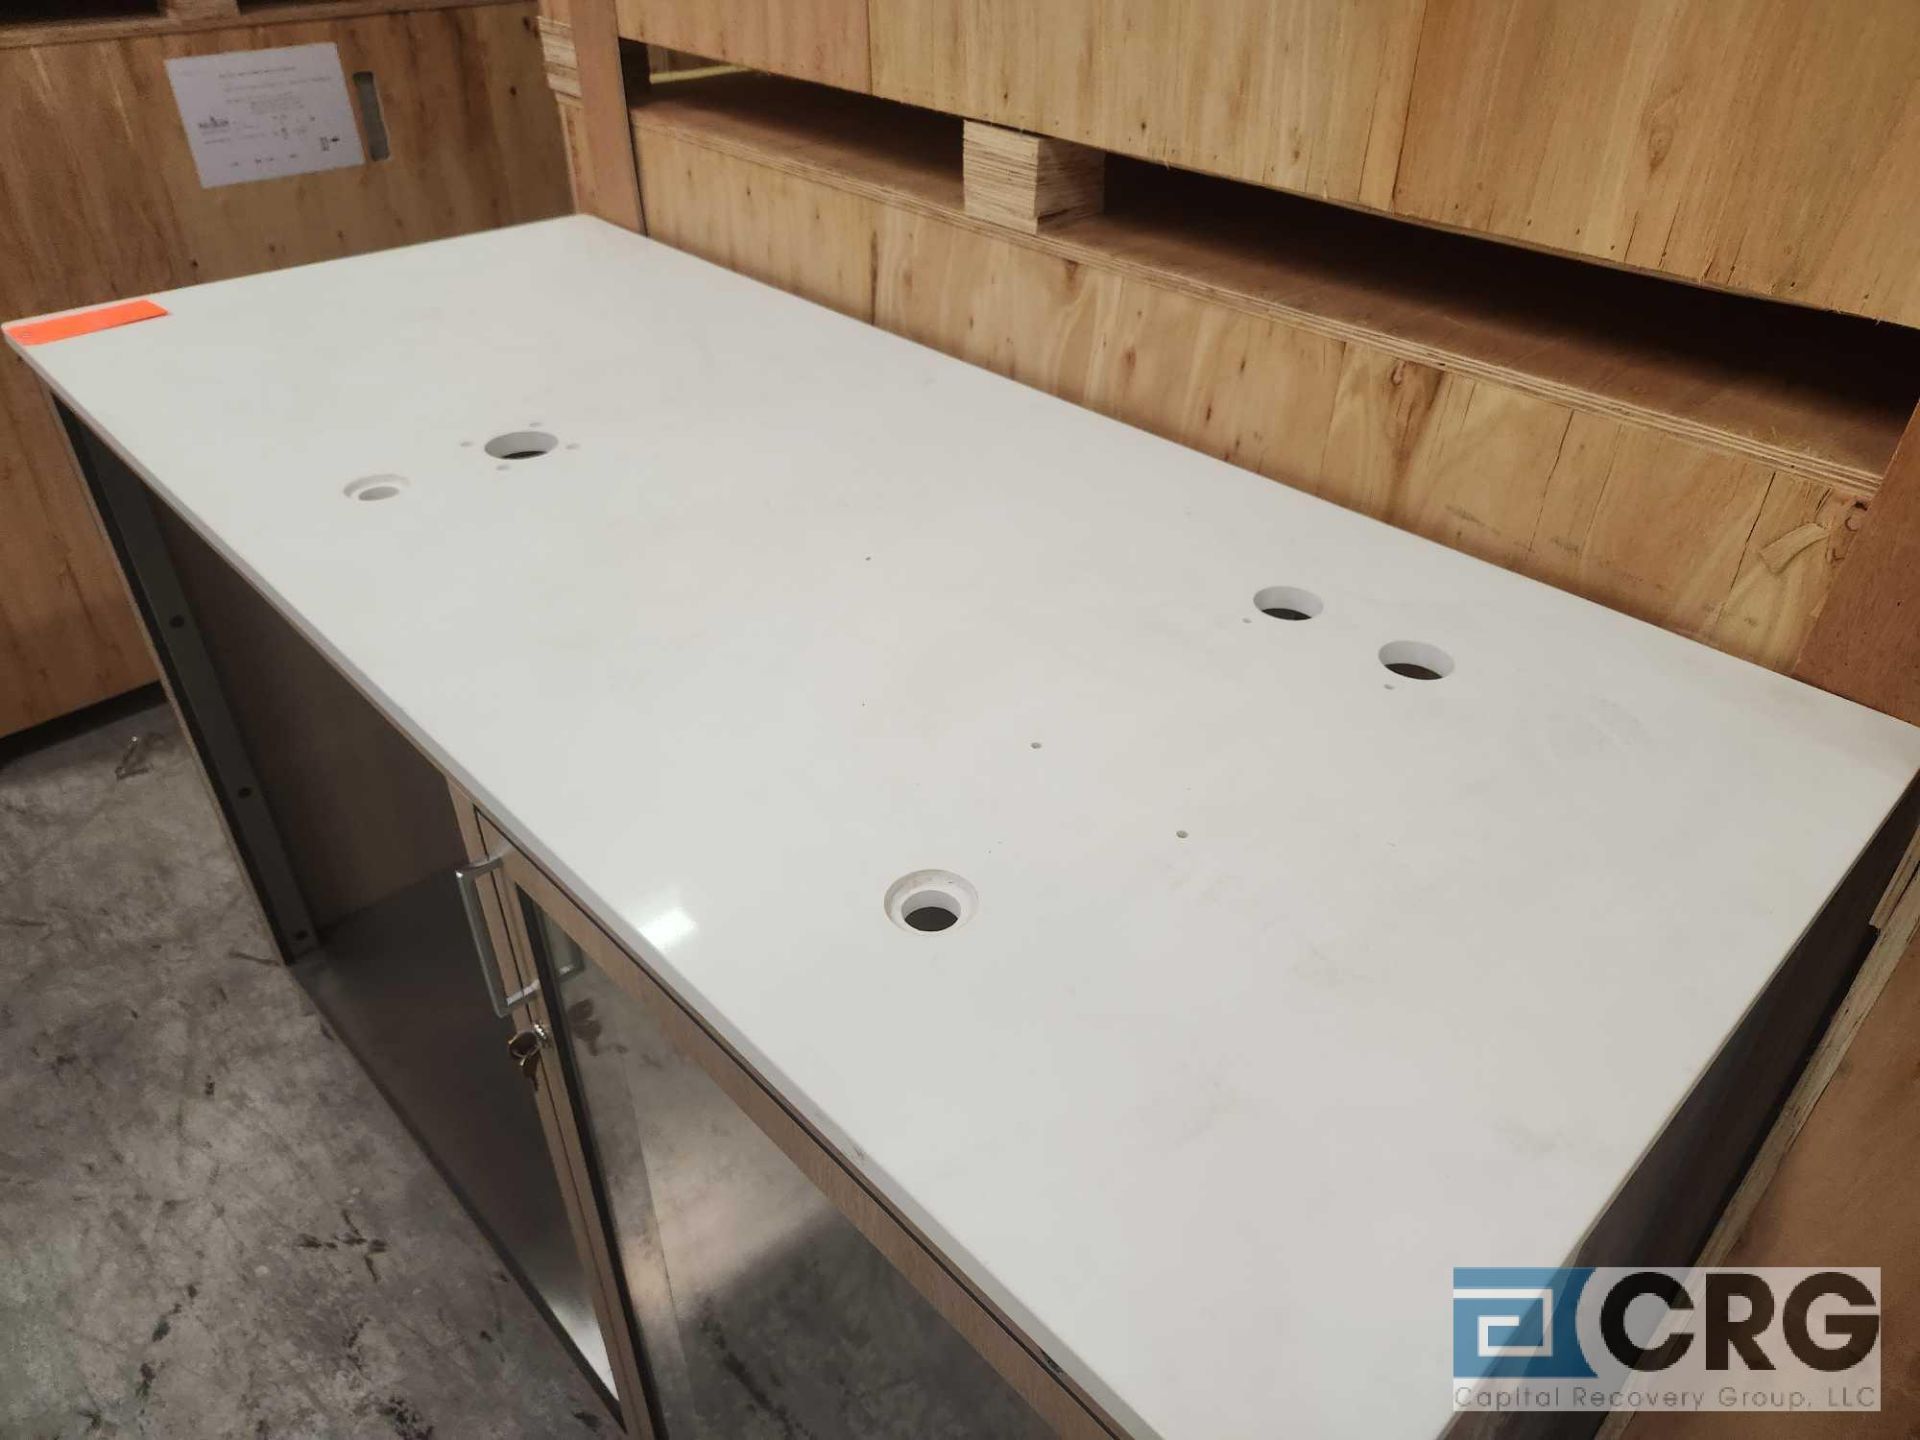 Ramler custom welded stainless steel framed portable bar serving stations - Image 2 of 4